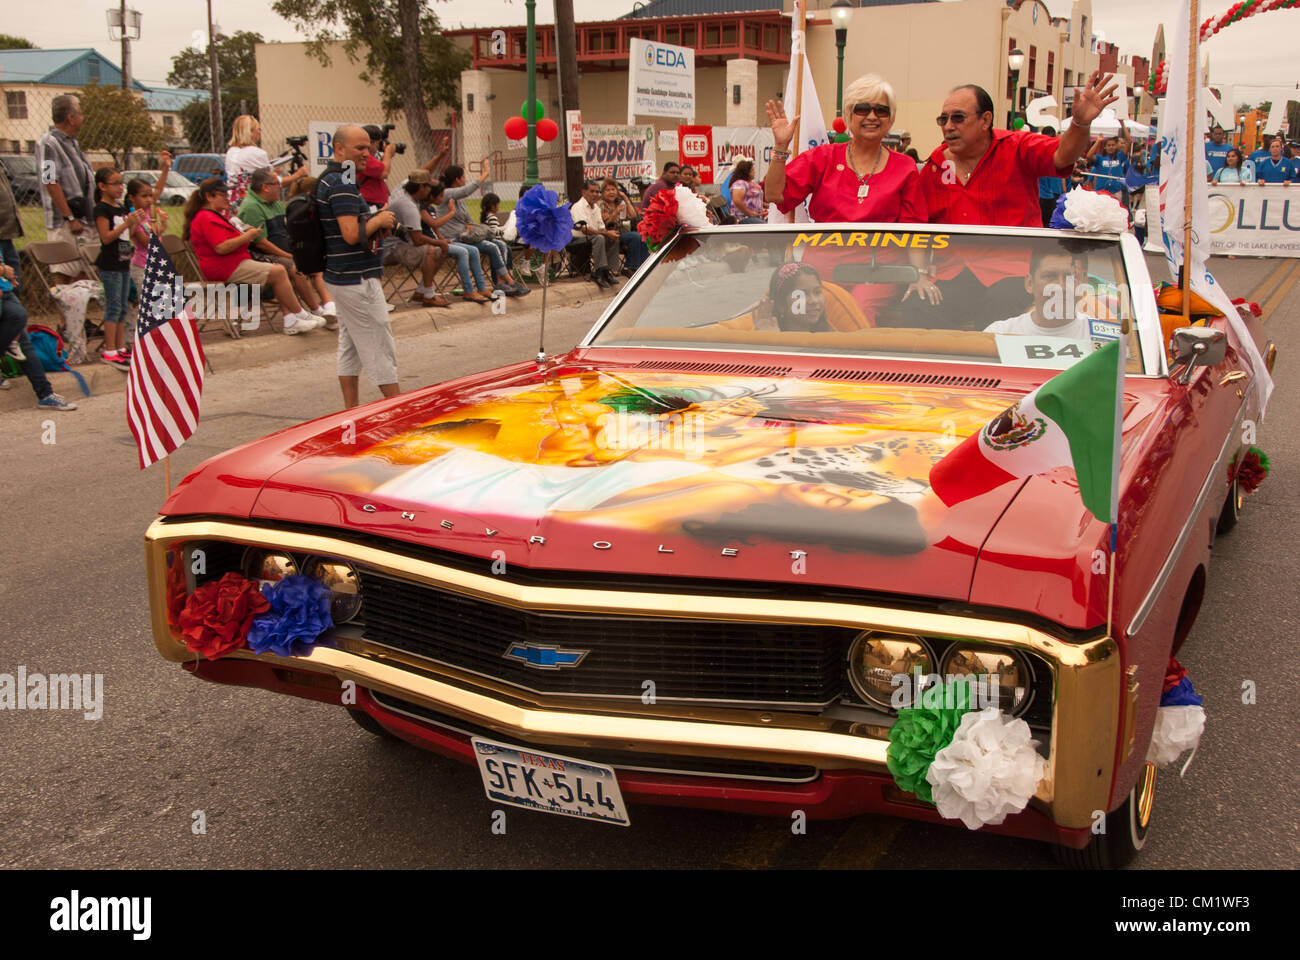 15. September 2012 San Antonio, Texas, USA - Chevrolet Low Rider und Vertretern der US-Marines teilnehmen jährliche Diez y Seis-Parade zum mexikanischen Unabhängigkeitstag zu feiern. Moderiert wird die Veranstaltung durch die Avenida Guadalupe Nachbarschaftsverbindung. Stockfoto